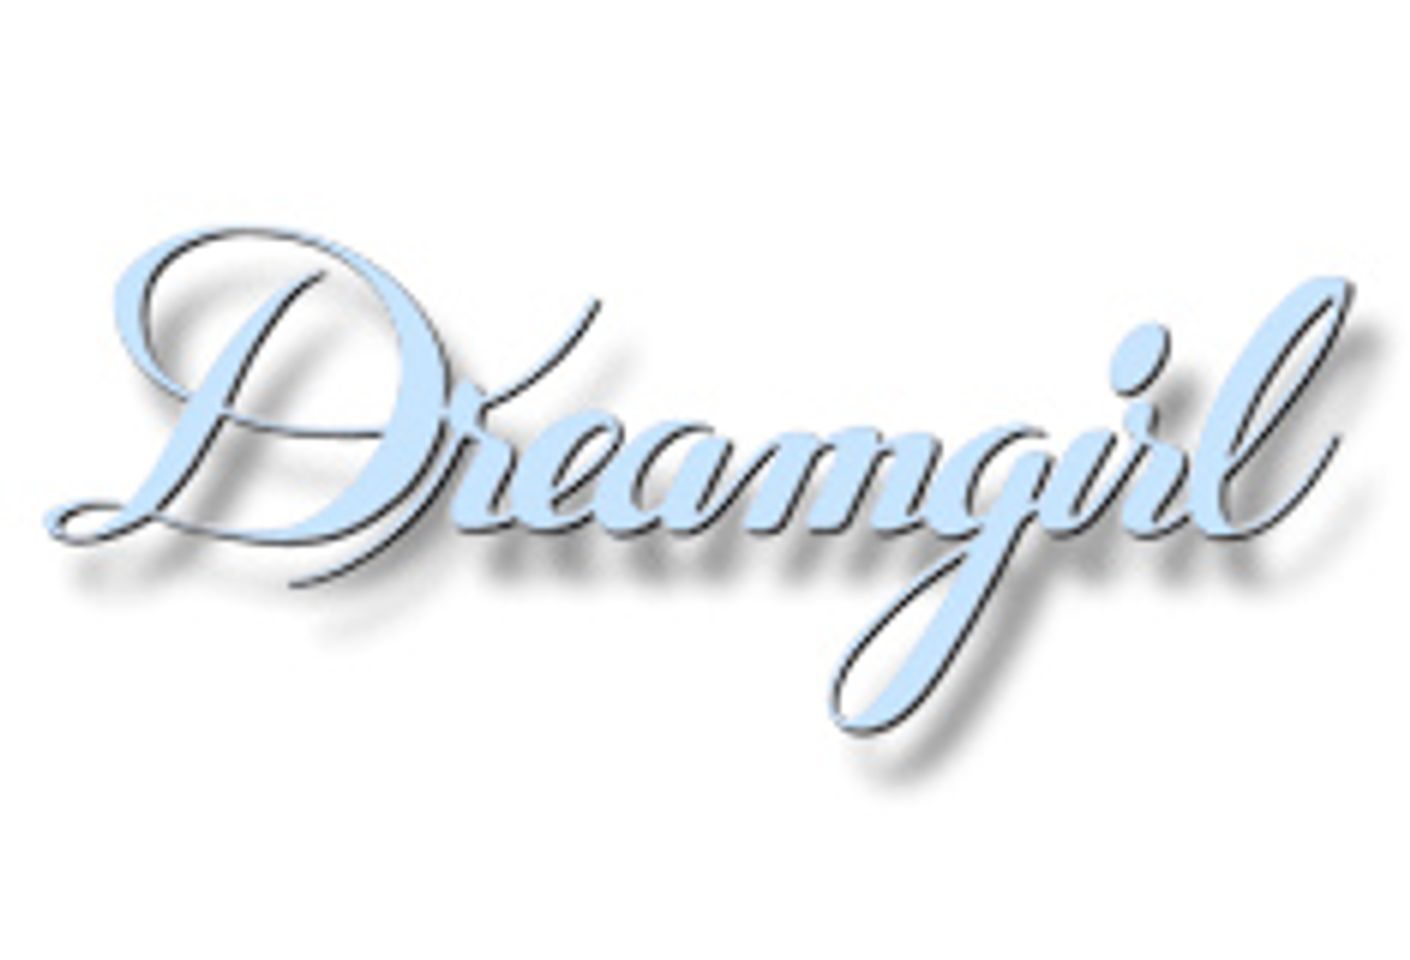 Dreamgirl debuts its 2008/2009 Dancewear & Clubwear Collection.